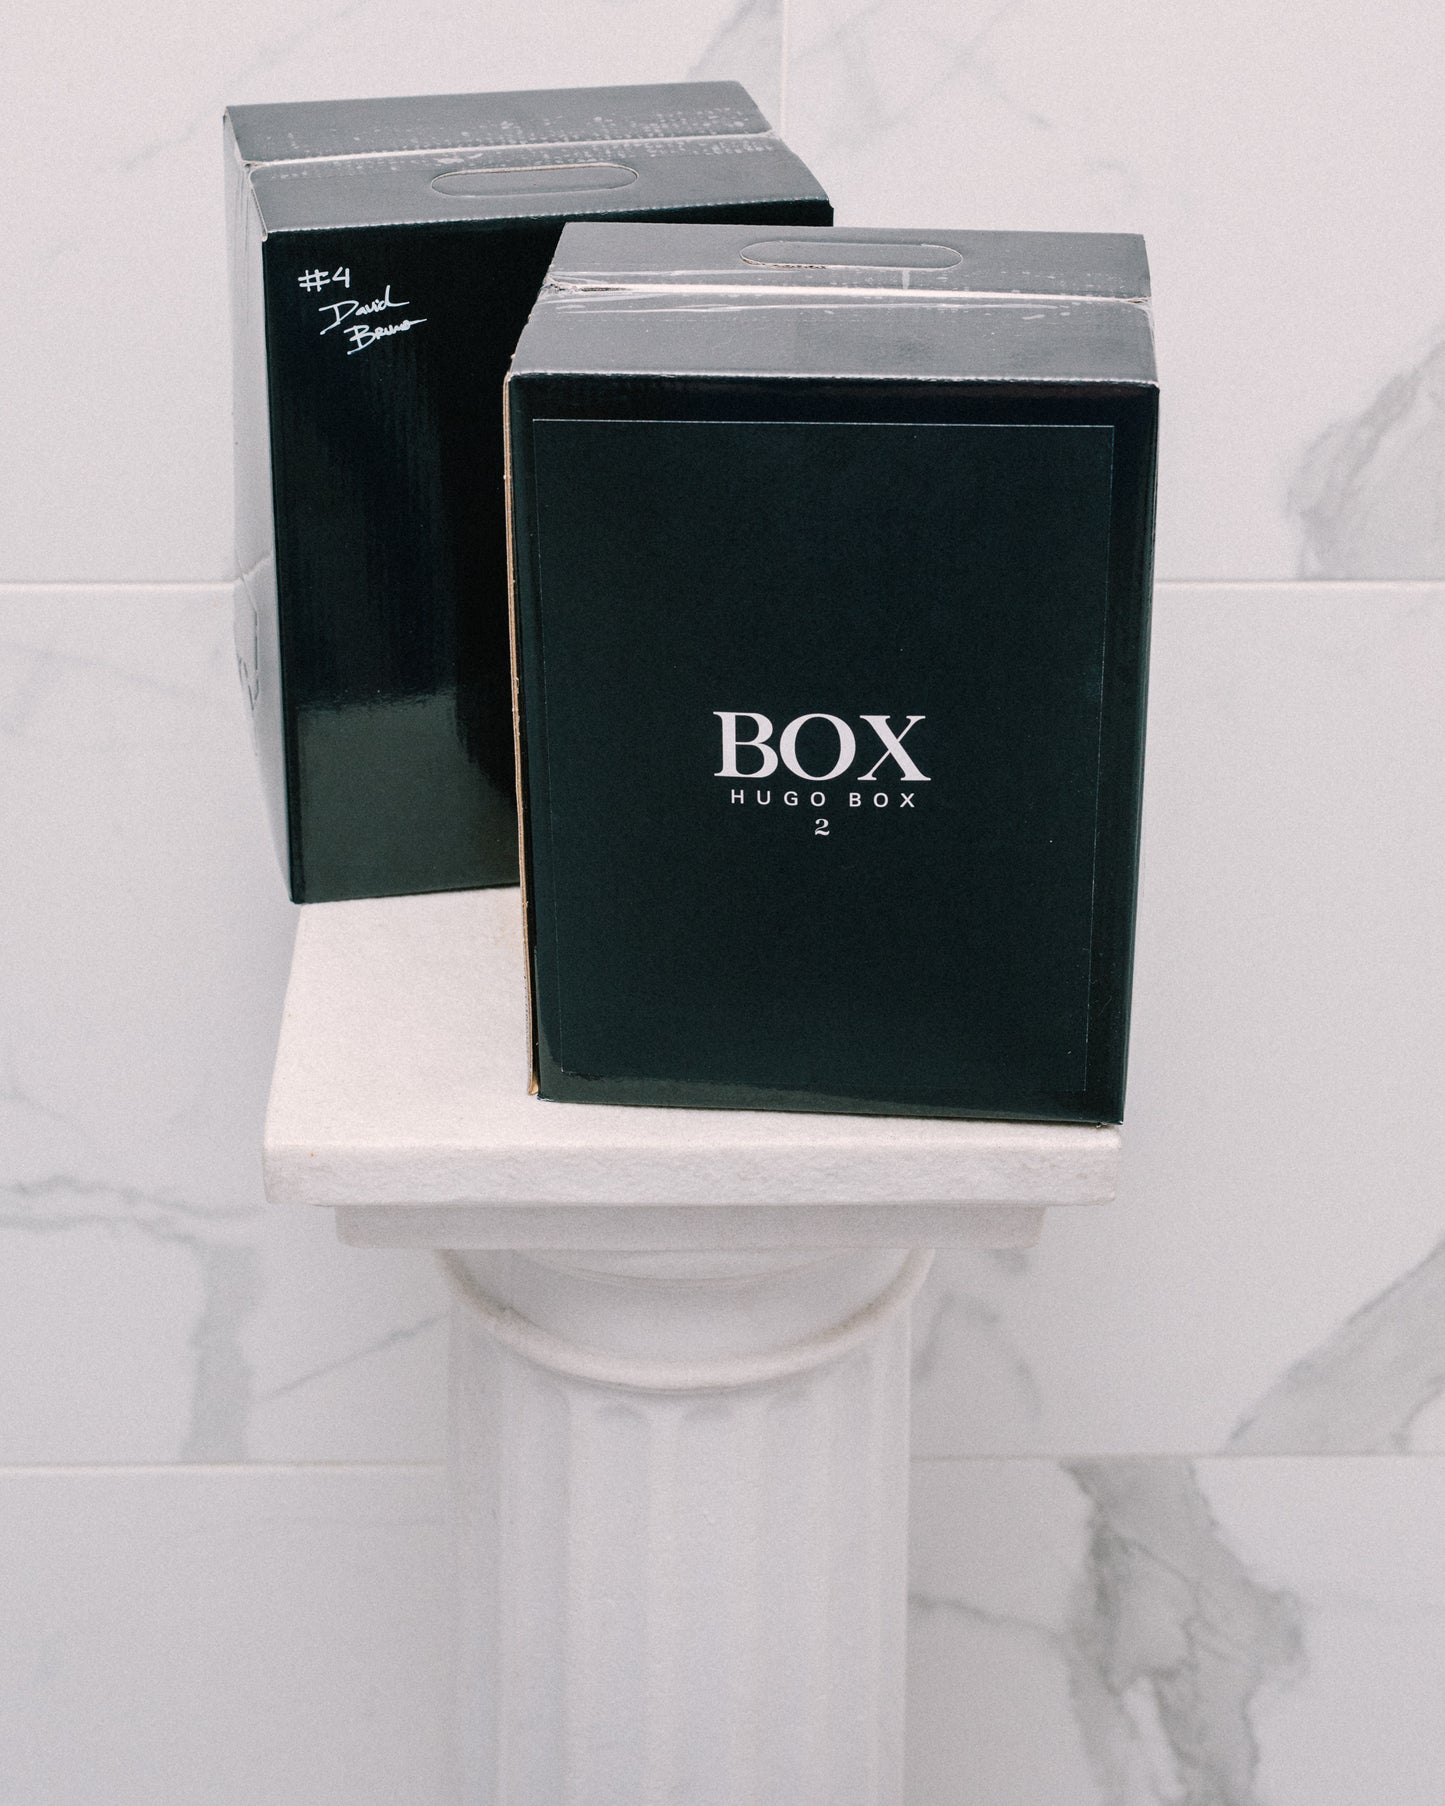 HUGO BOX II (Vinho Tinto em BOX)